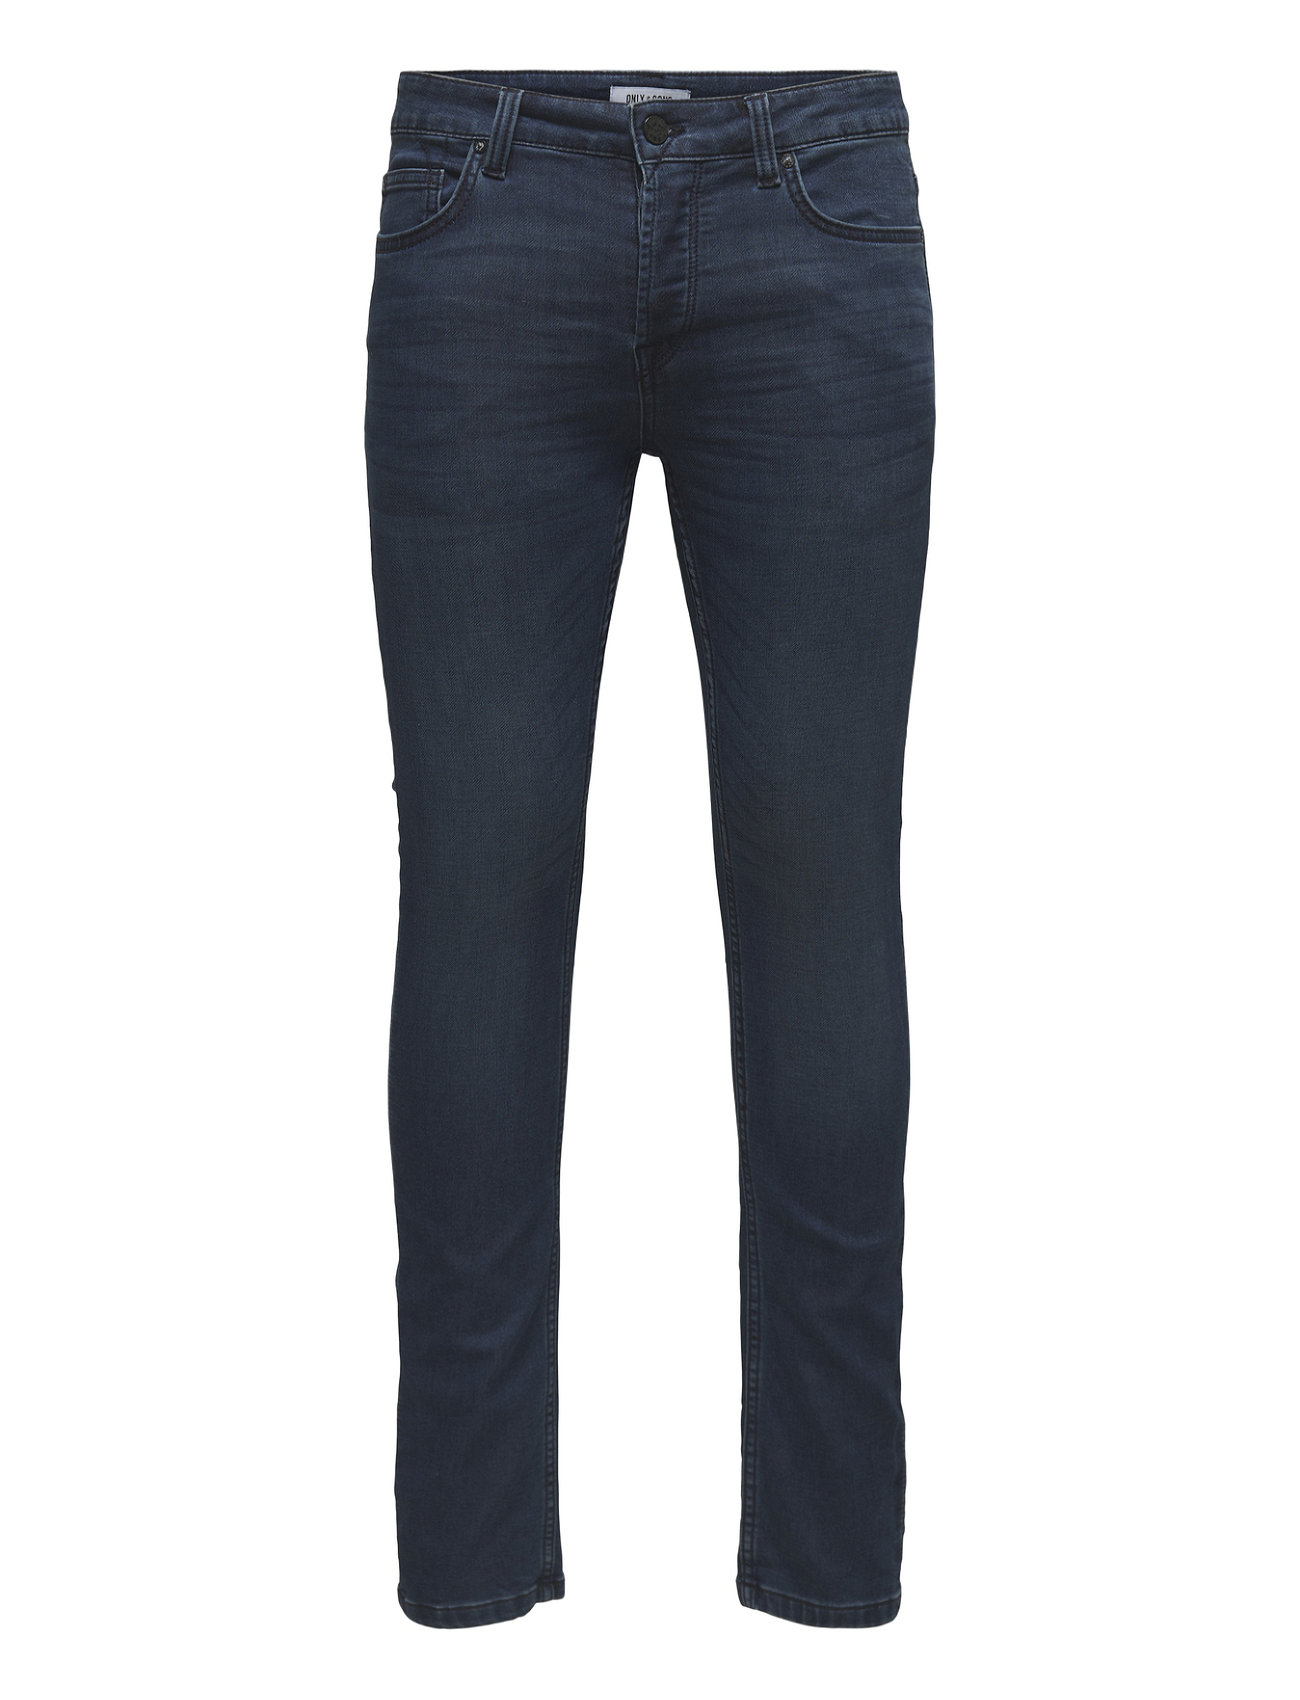 Koncentration hat frisk ONLY & SONS Onsloom Jog Life Dk Blue Pk 0431 - Skinny jeans | Boozt.com